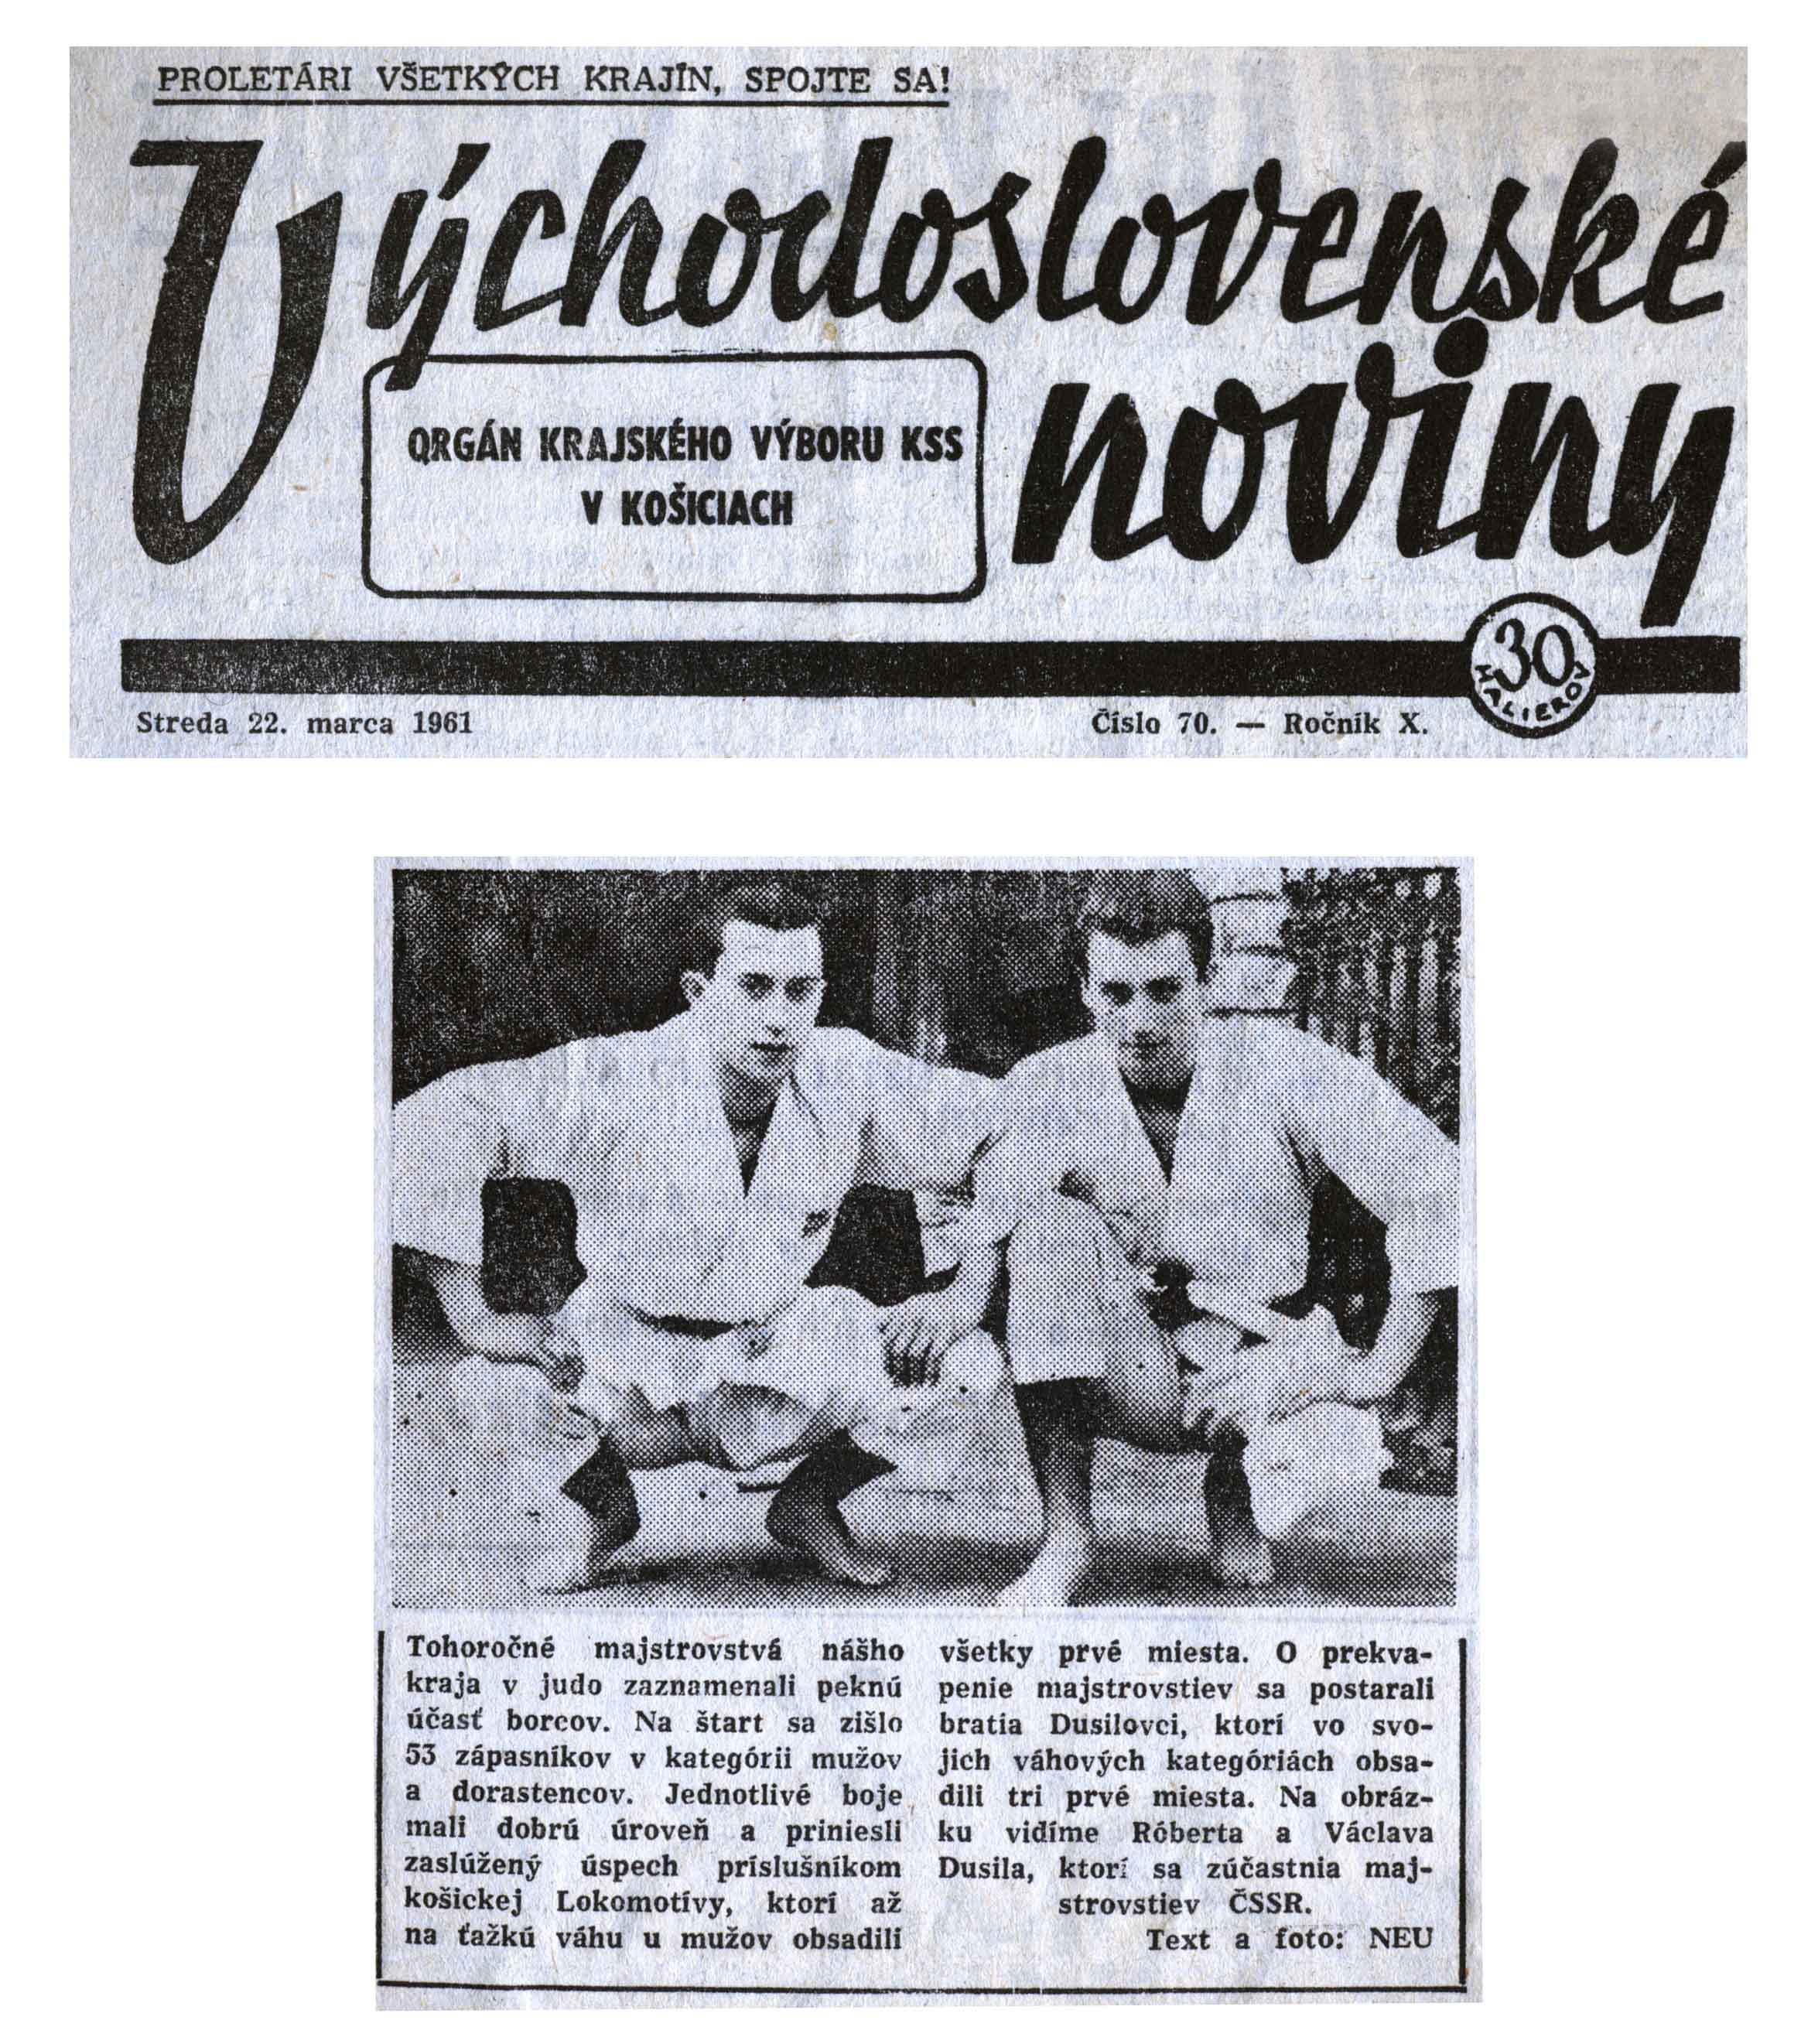 Article - Tohoročně majstrovstvá nášho kraja v Judo